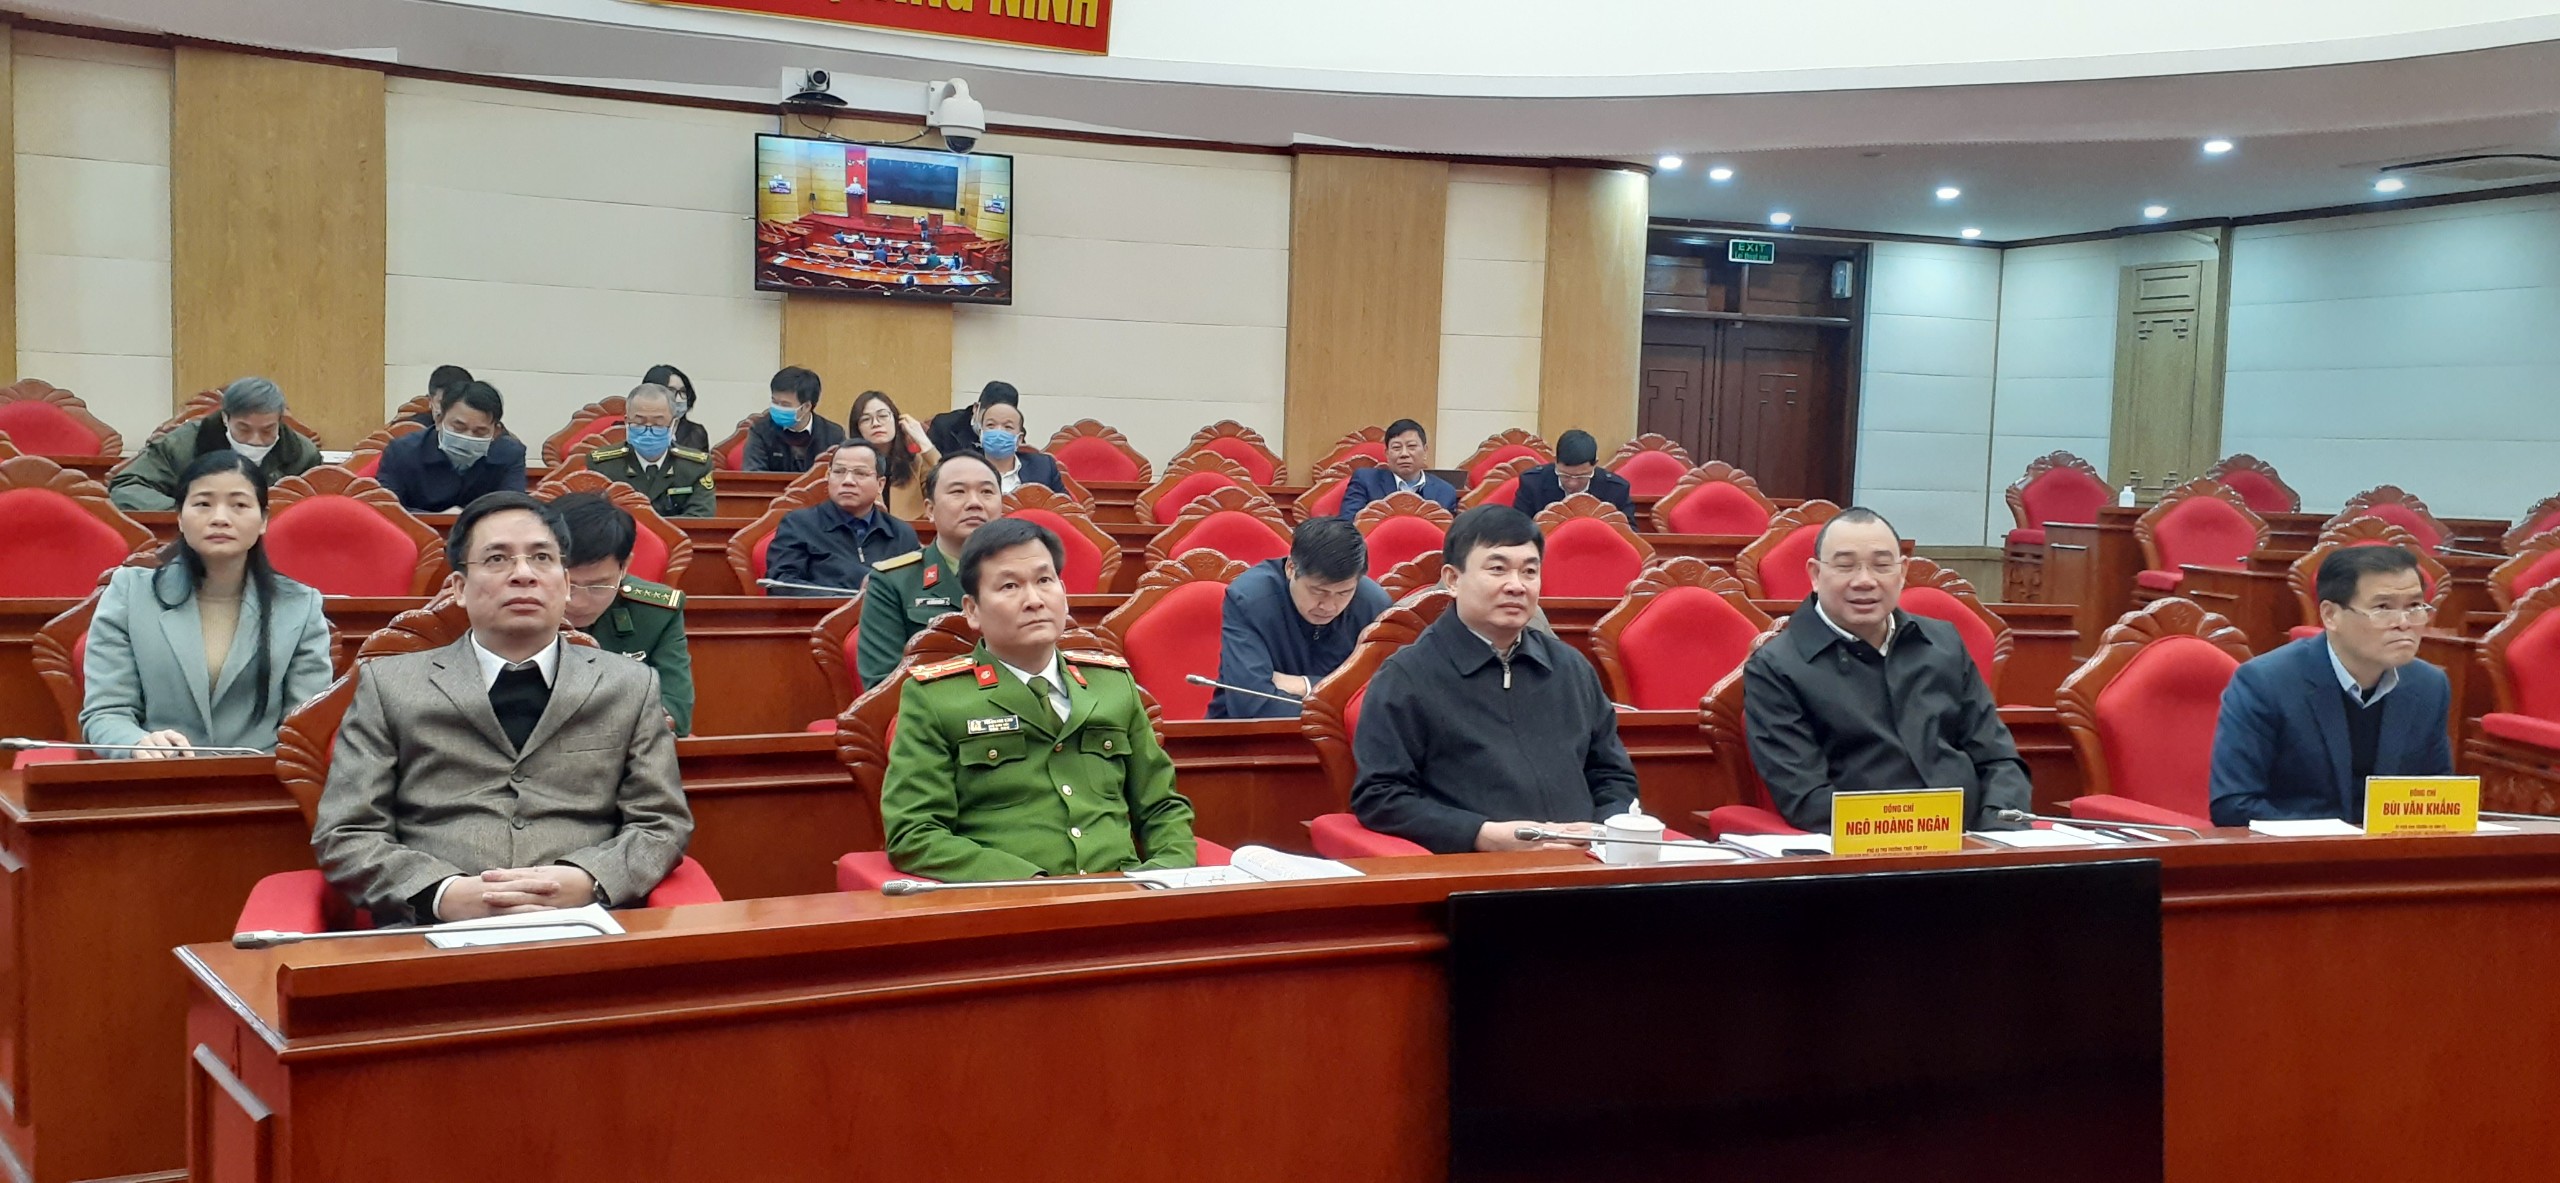 Đồng chí Ngô Hoàng Ngân, Phó Bí thư thường trực Tỉnh ủy dự hội nghị tại điểm cầu Quảng Ninh